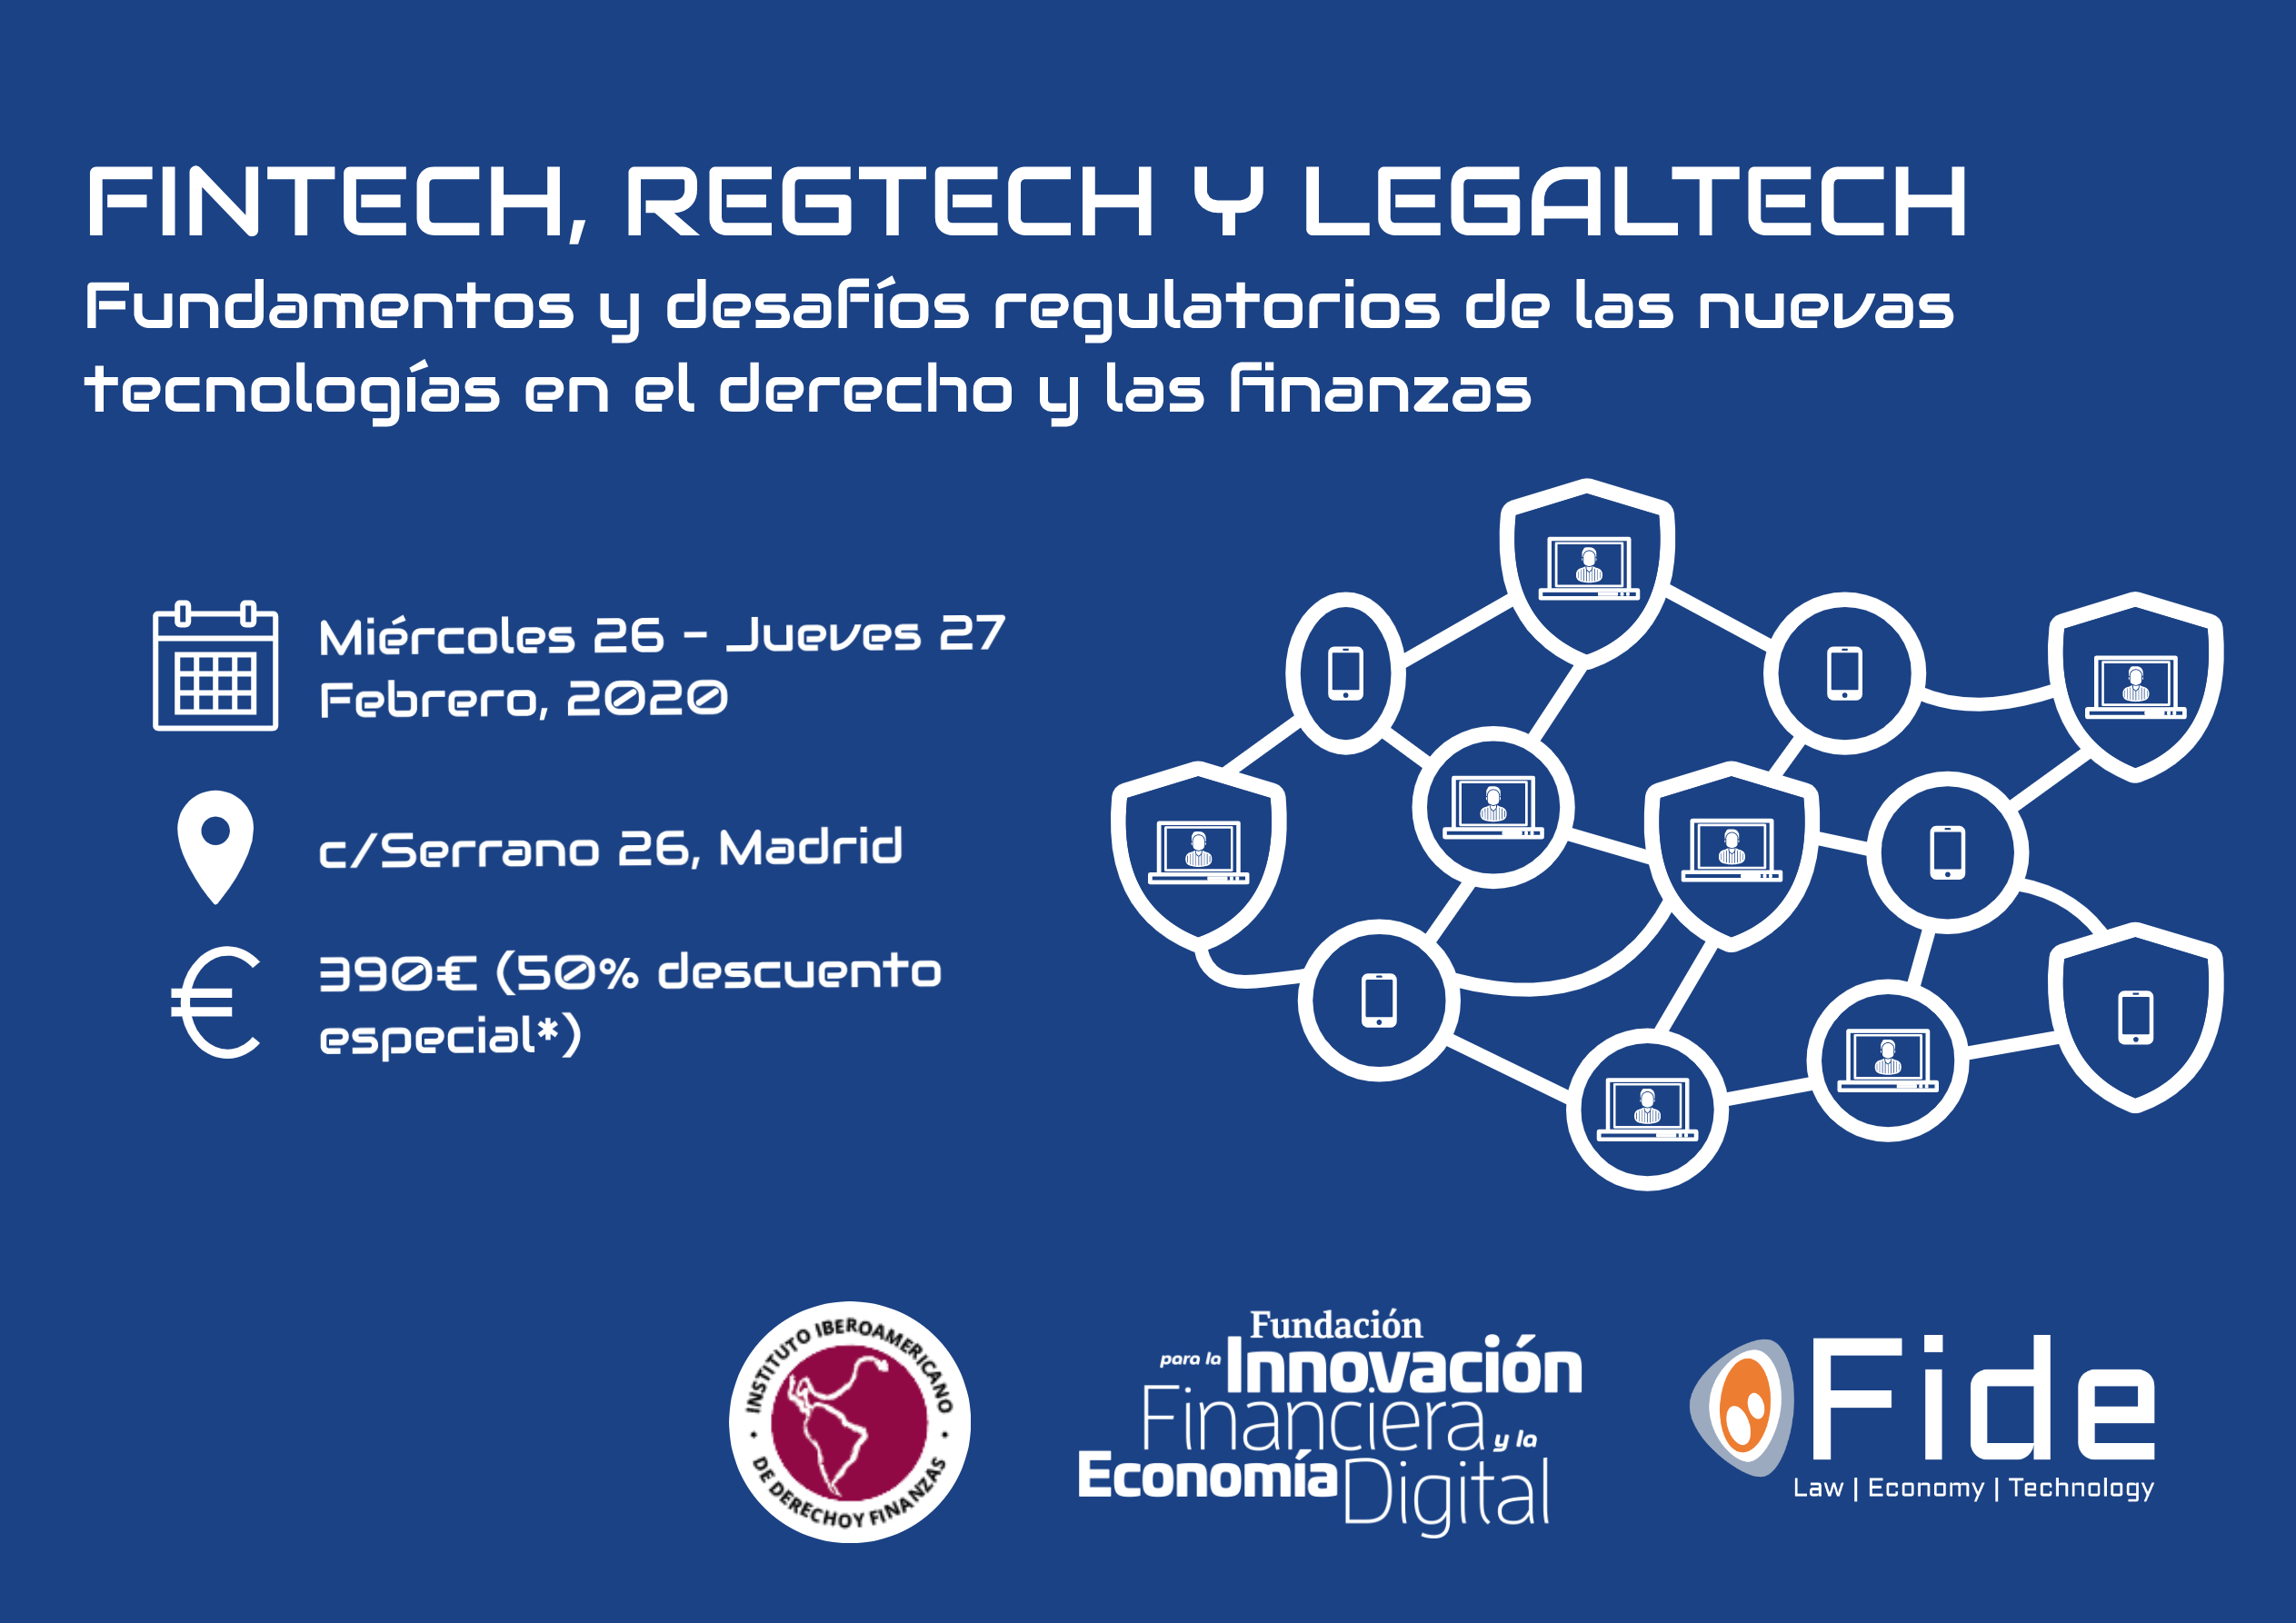 Congreso de Fintech, Regtech y Legaltech: Fundamentos y desafíos regulatorios de las nuevas tecnologías en el derecho y las finanzas